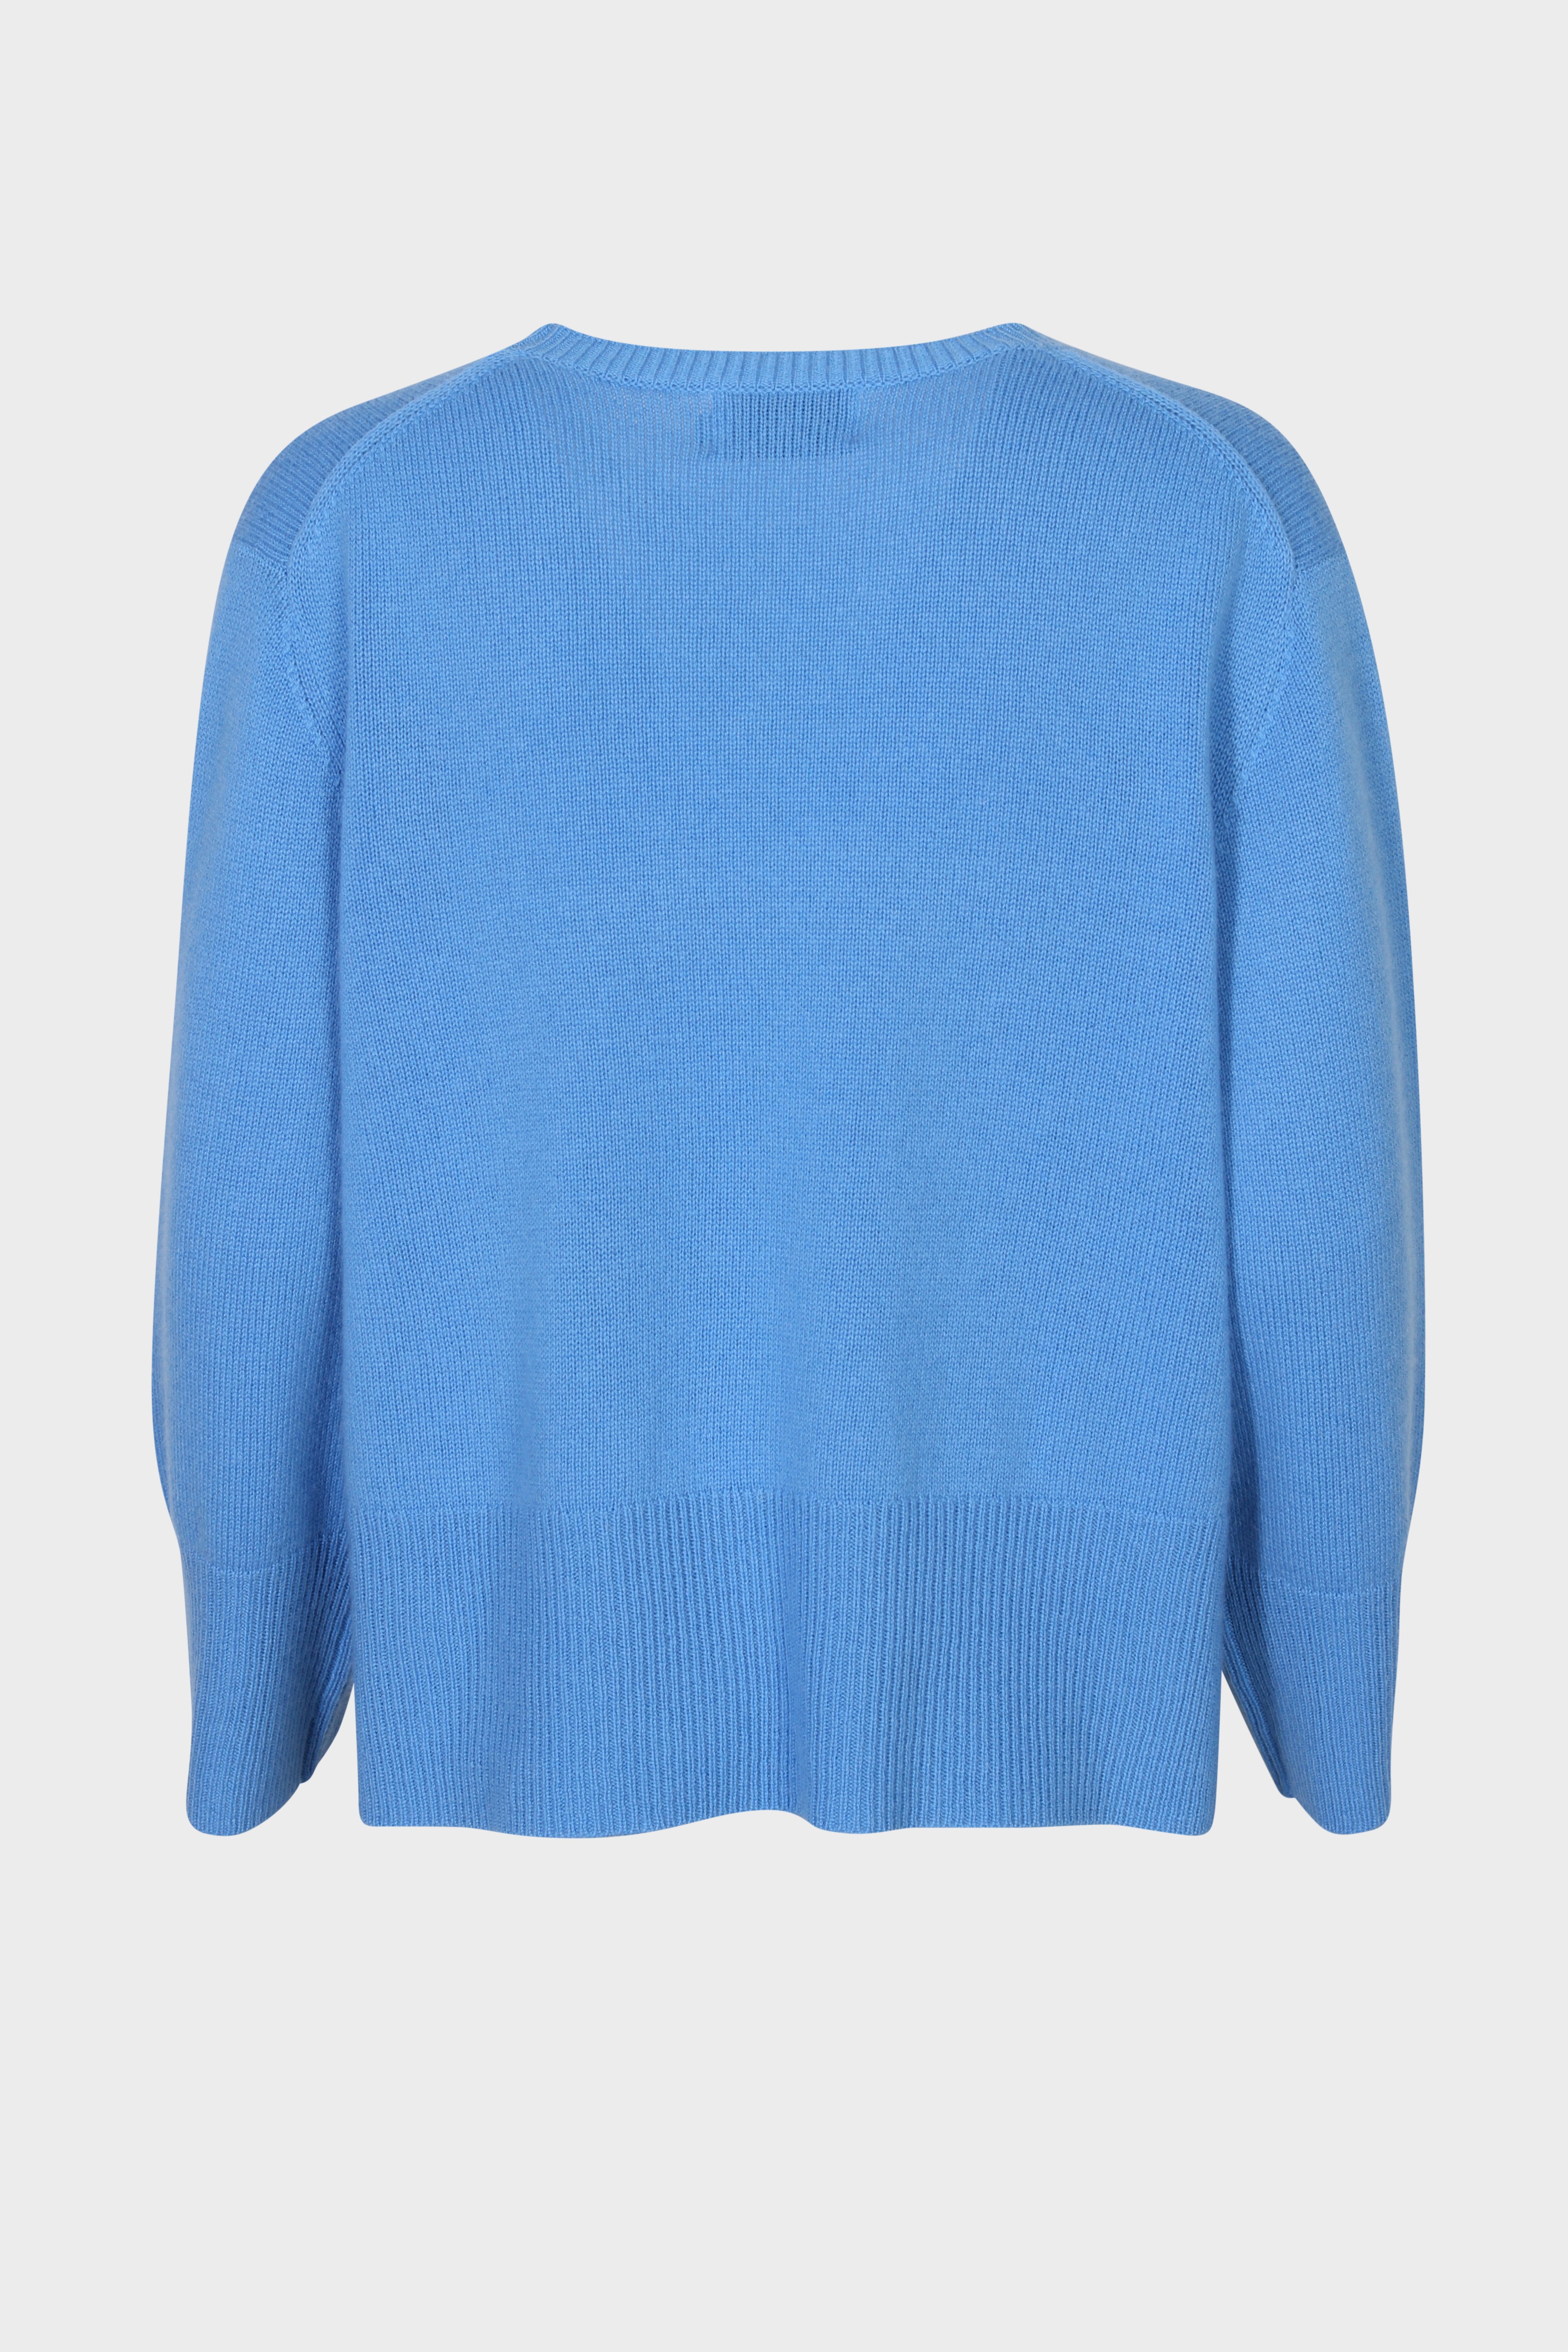 FLONA Cashmere Sweater in Azur L